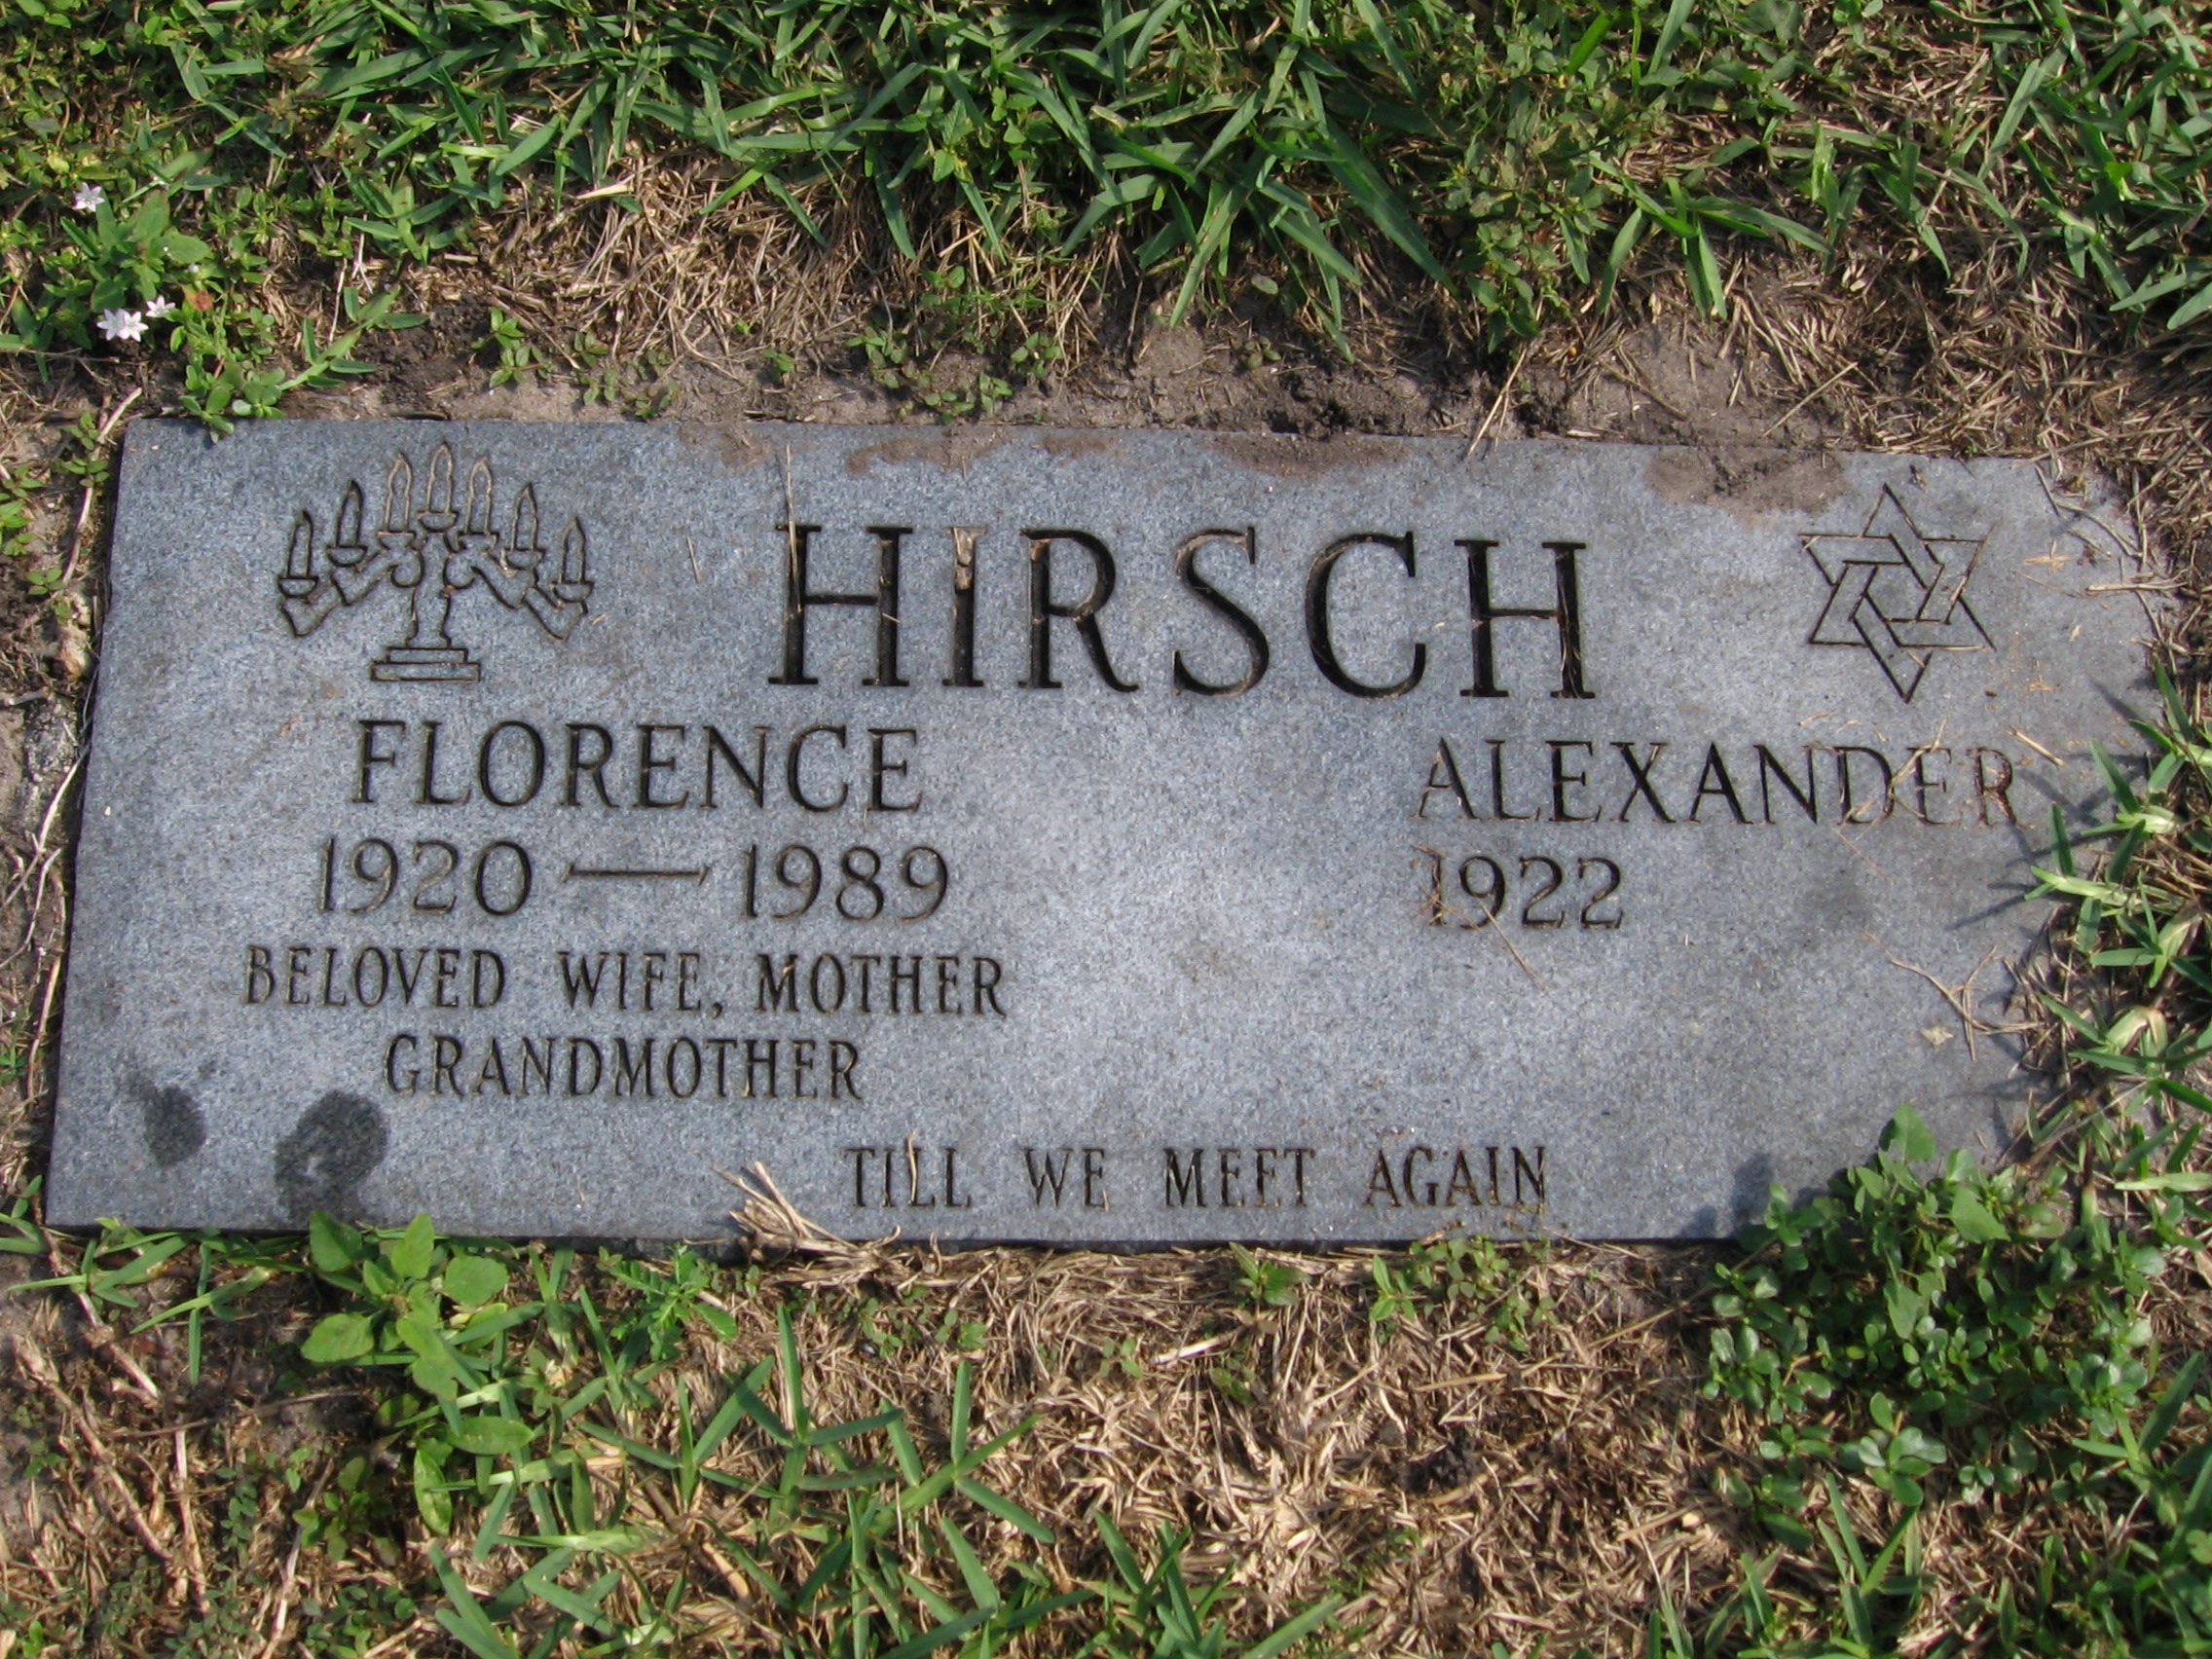 Florence Hirsch